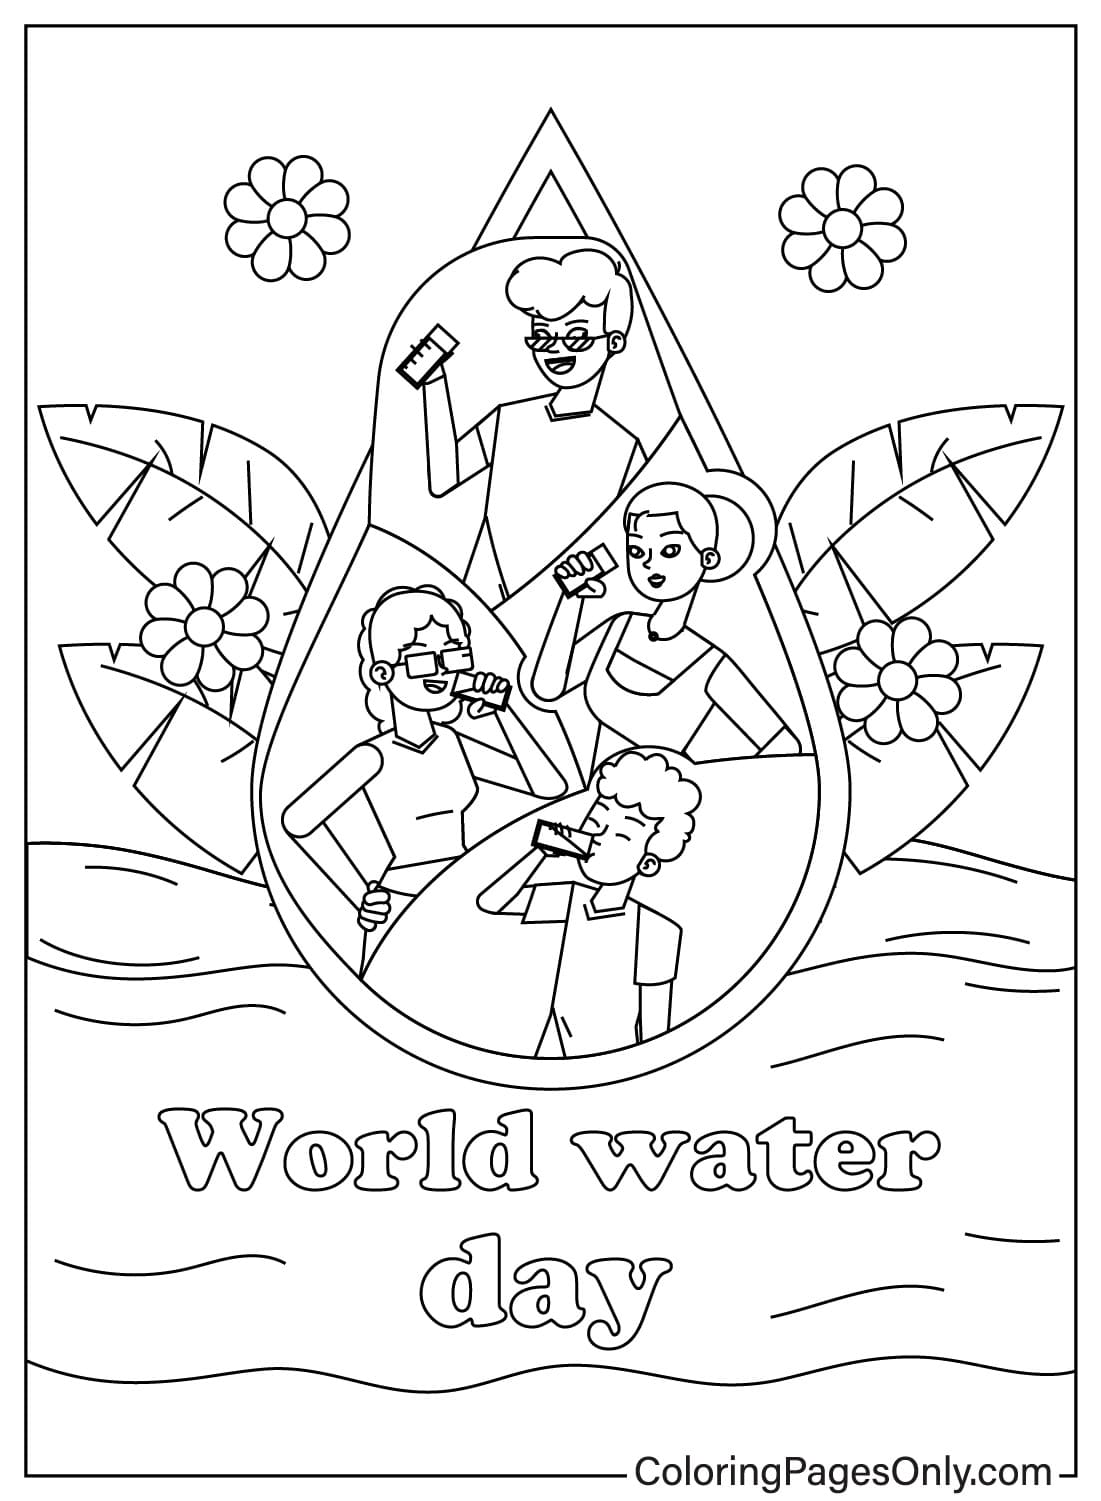 ورقة تلوين يوم المياه العالمي للأطفال من يوم المياه العالمي